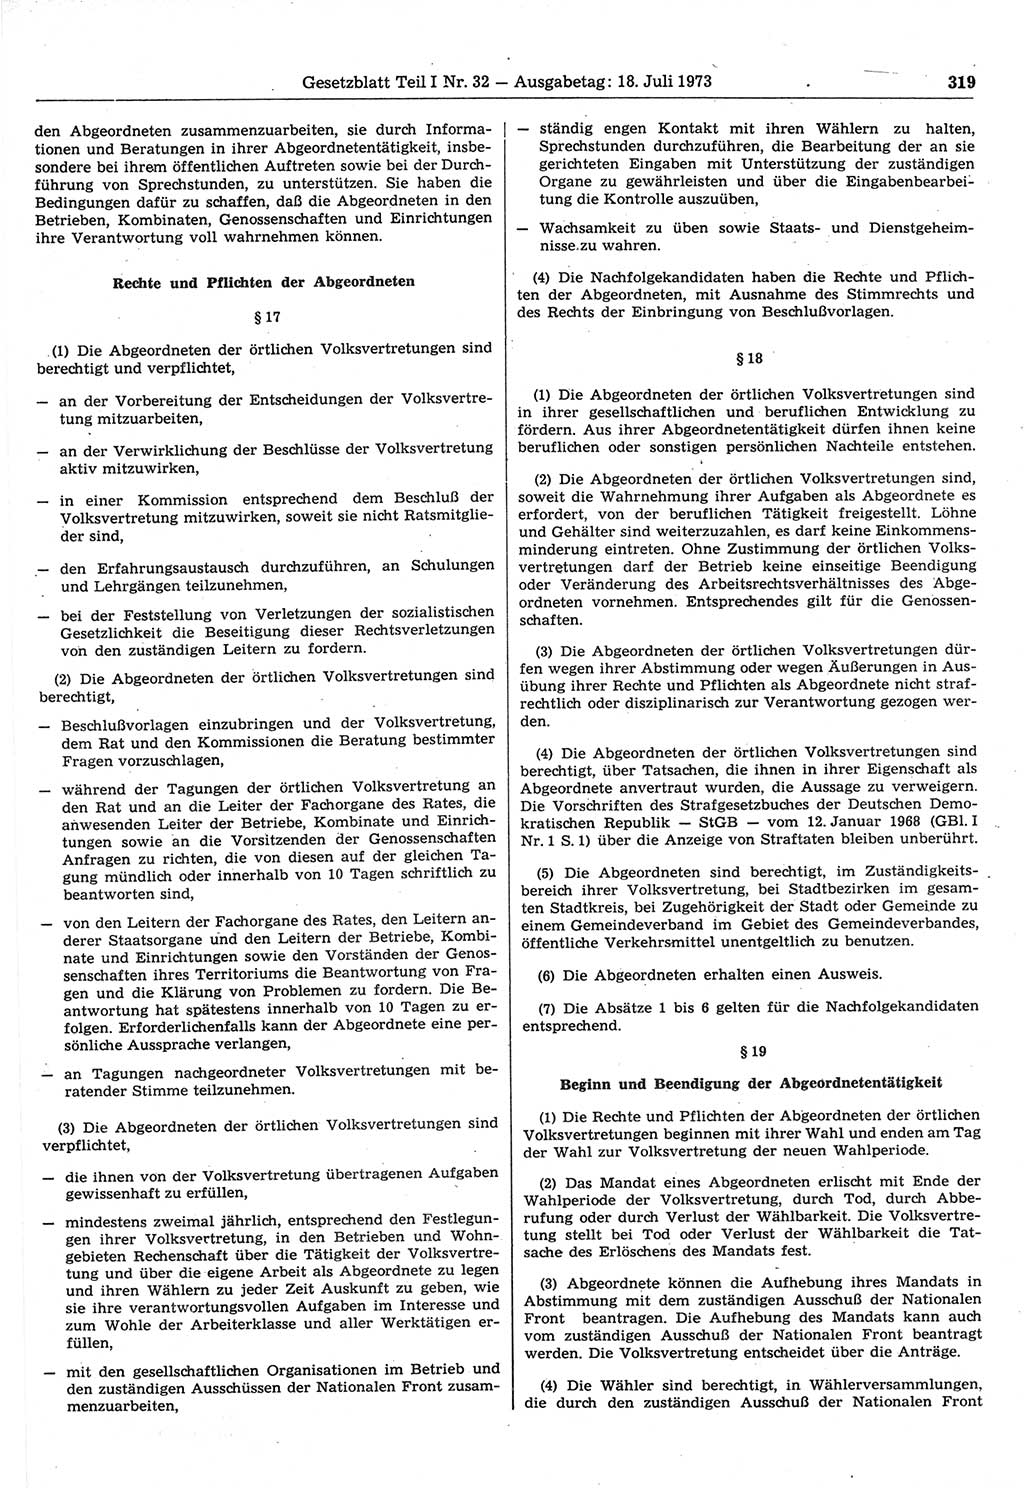 Gesetzblatt (GBl.) der Deutschen Demokratischen Republik (DDR) Teil Ⅰ 1973, Seite 319 (GBl. DDR Ⅰ 1973, S. 319)